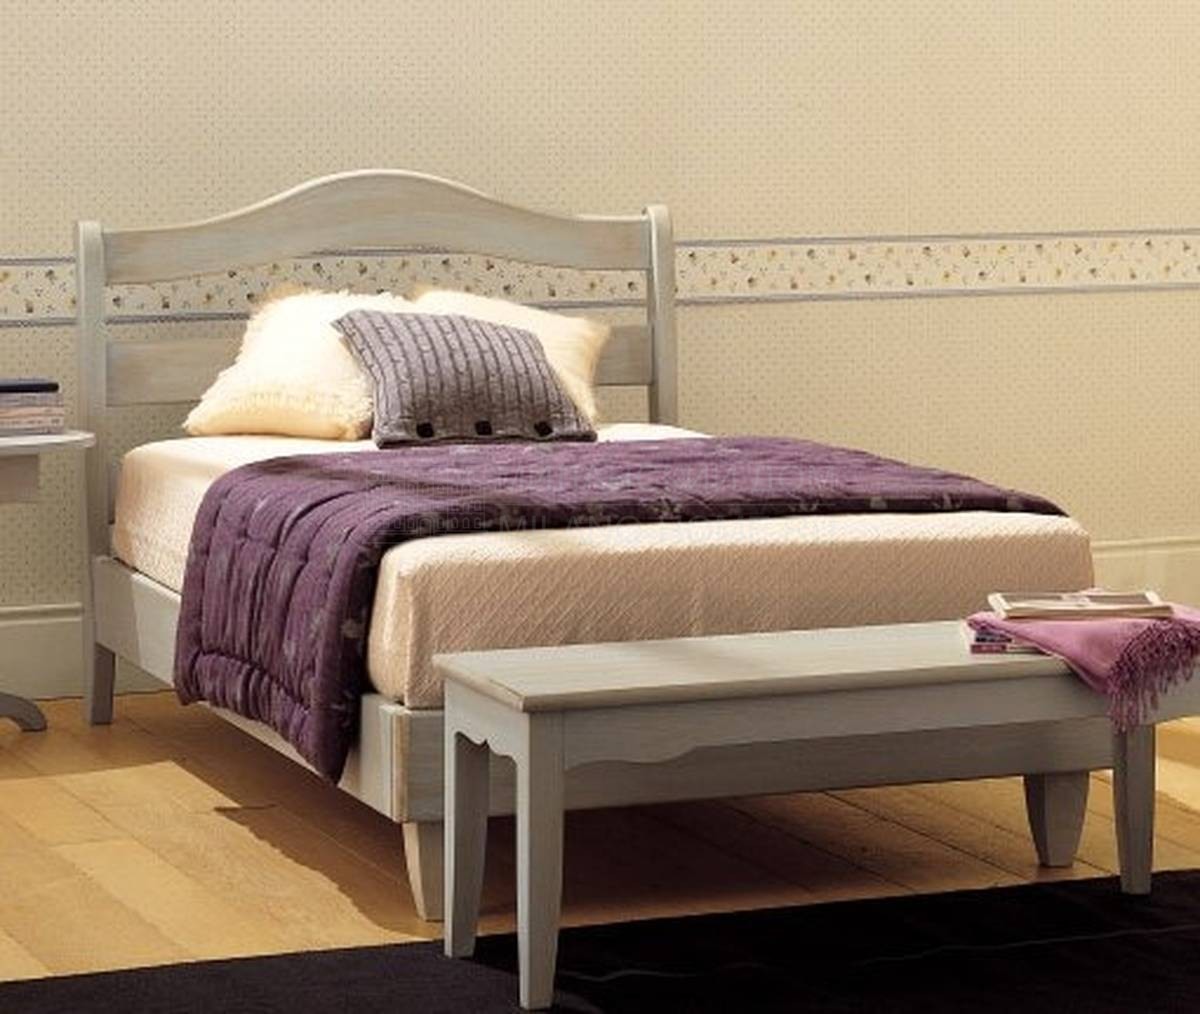 Односпальная кровать De Baggis/20-531/L из Италии фабрики DE BAGGIS